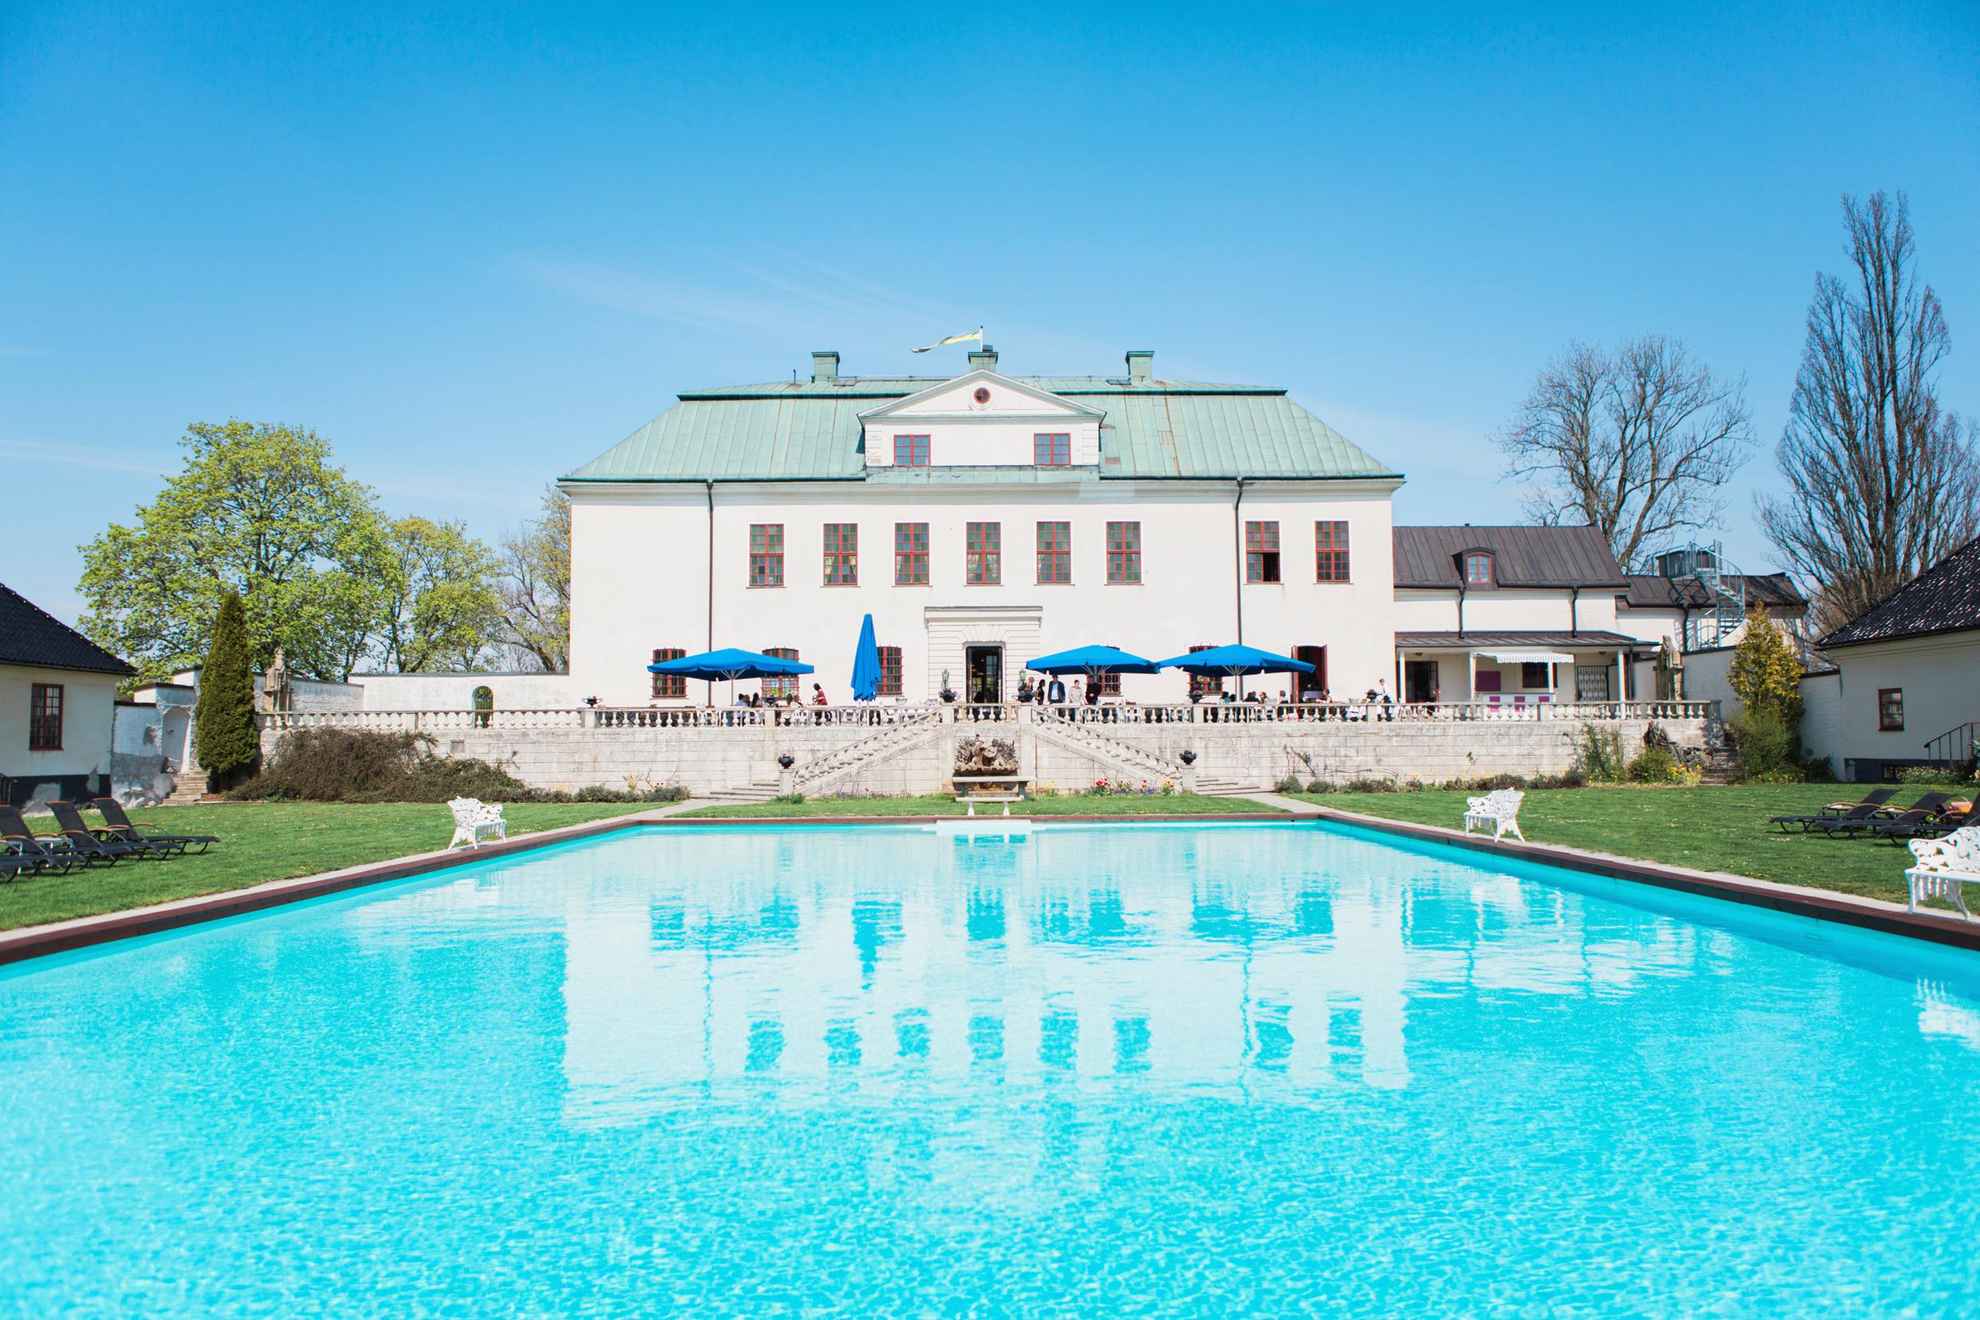 De achtertuin van kasteel Häringe, met een zwembad en een groot terras.